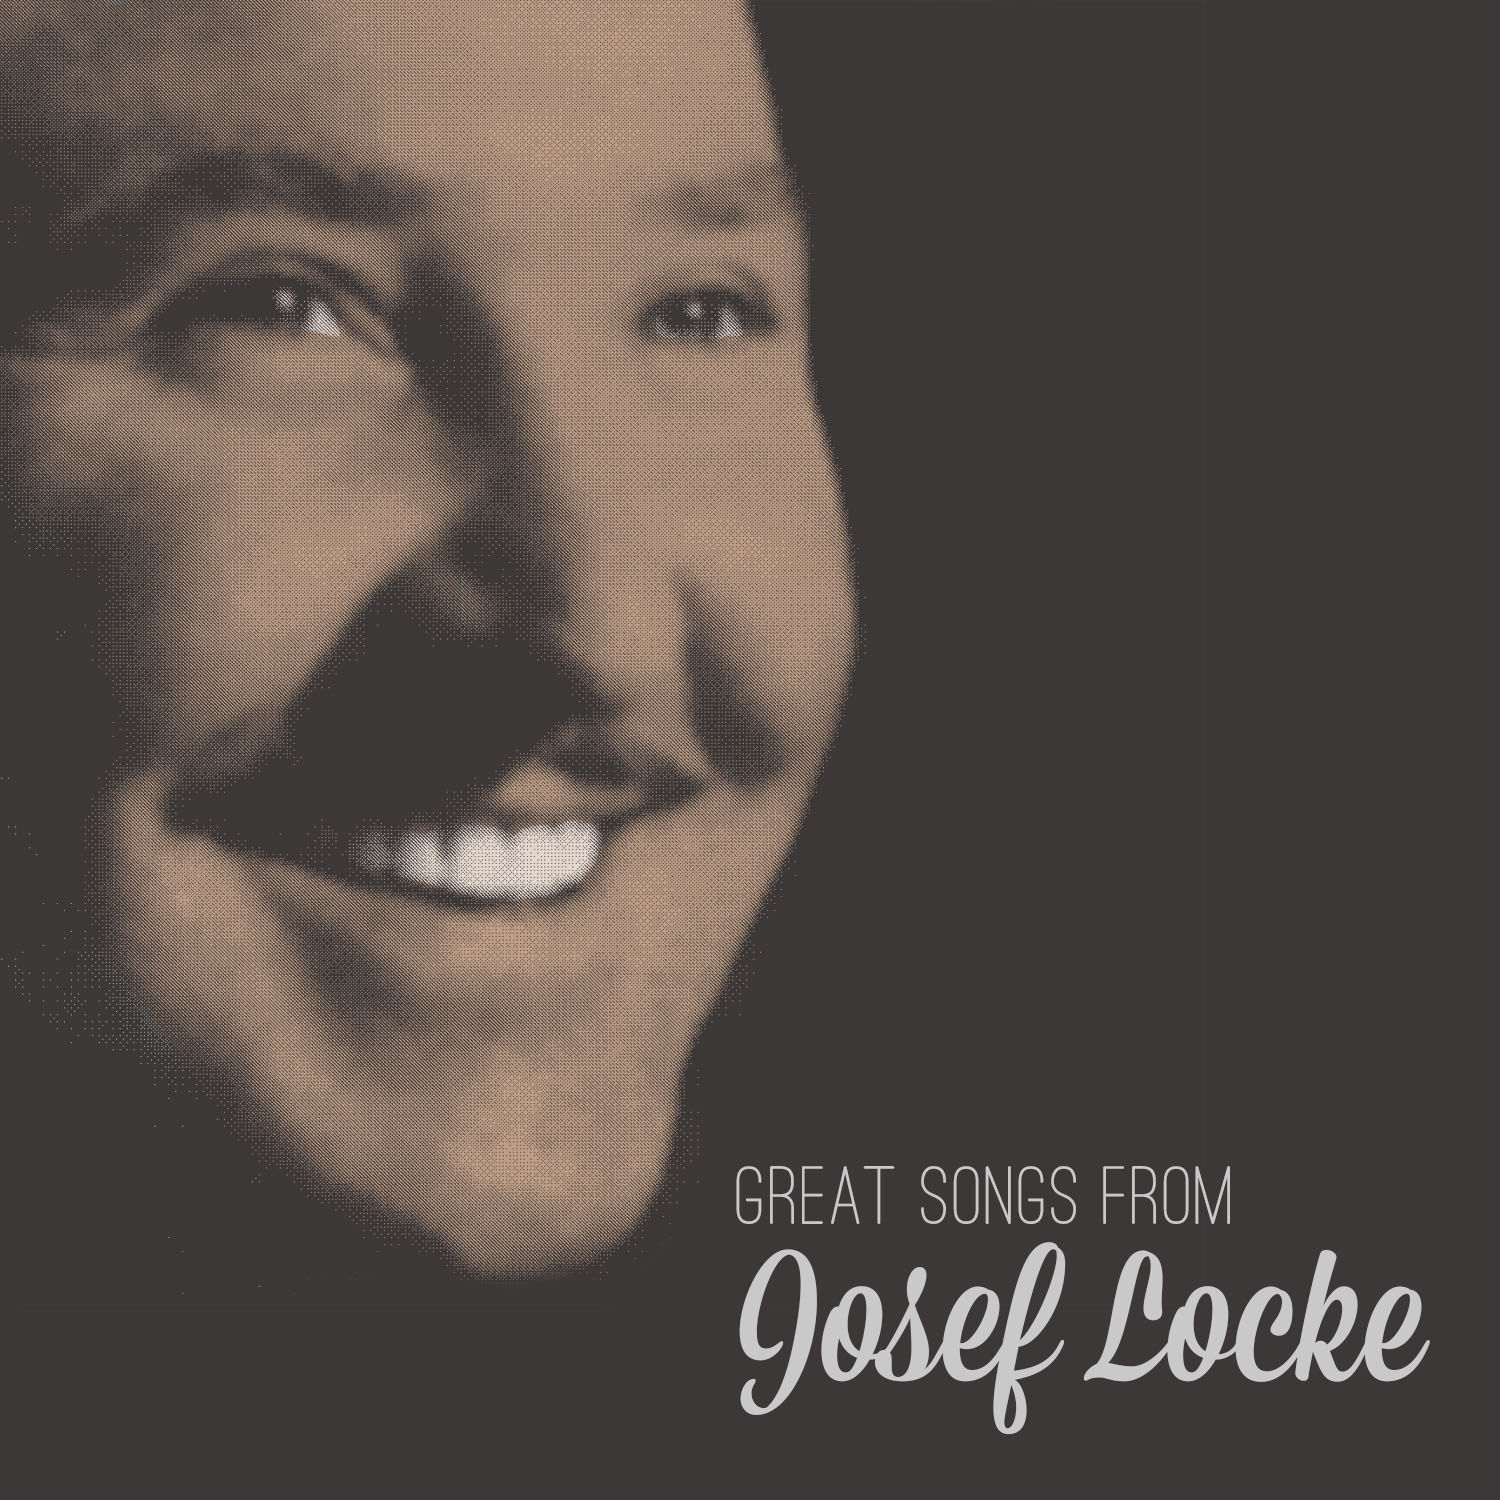 Josef Locke – Great Songs from Josef Locke